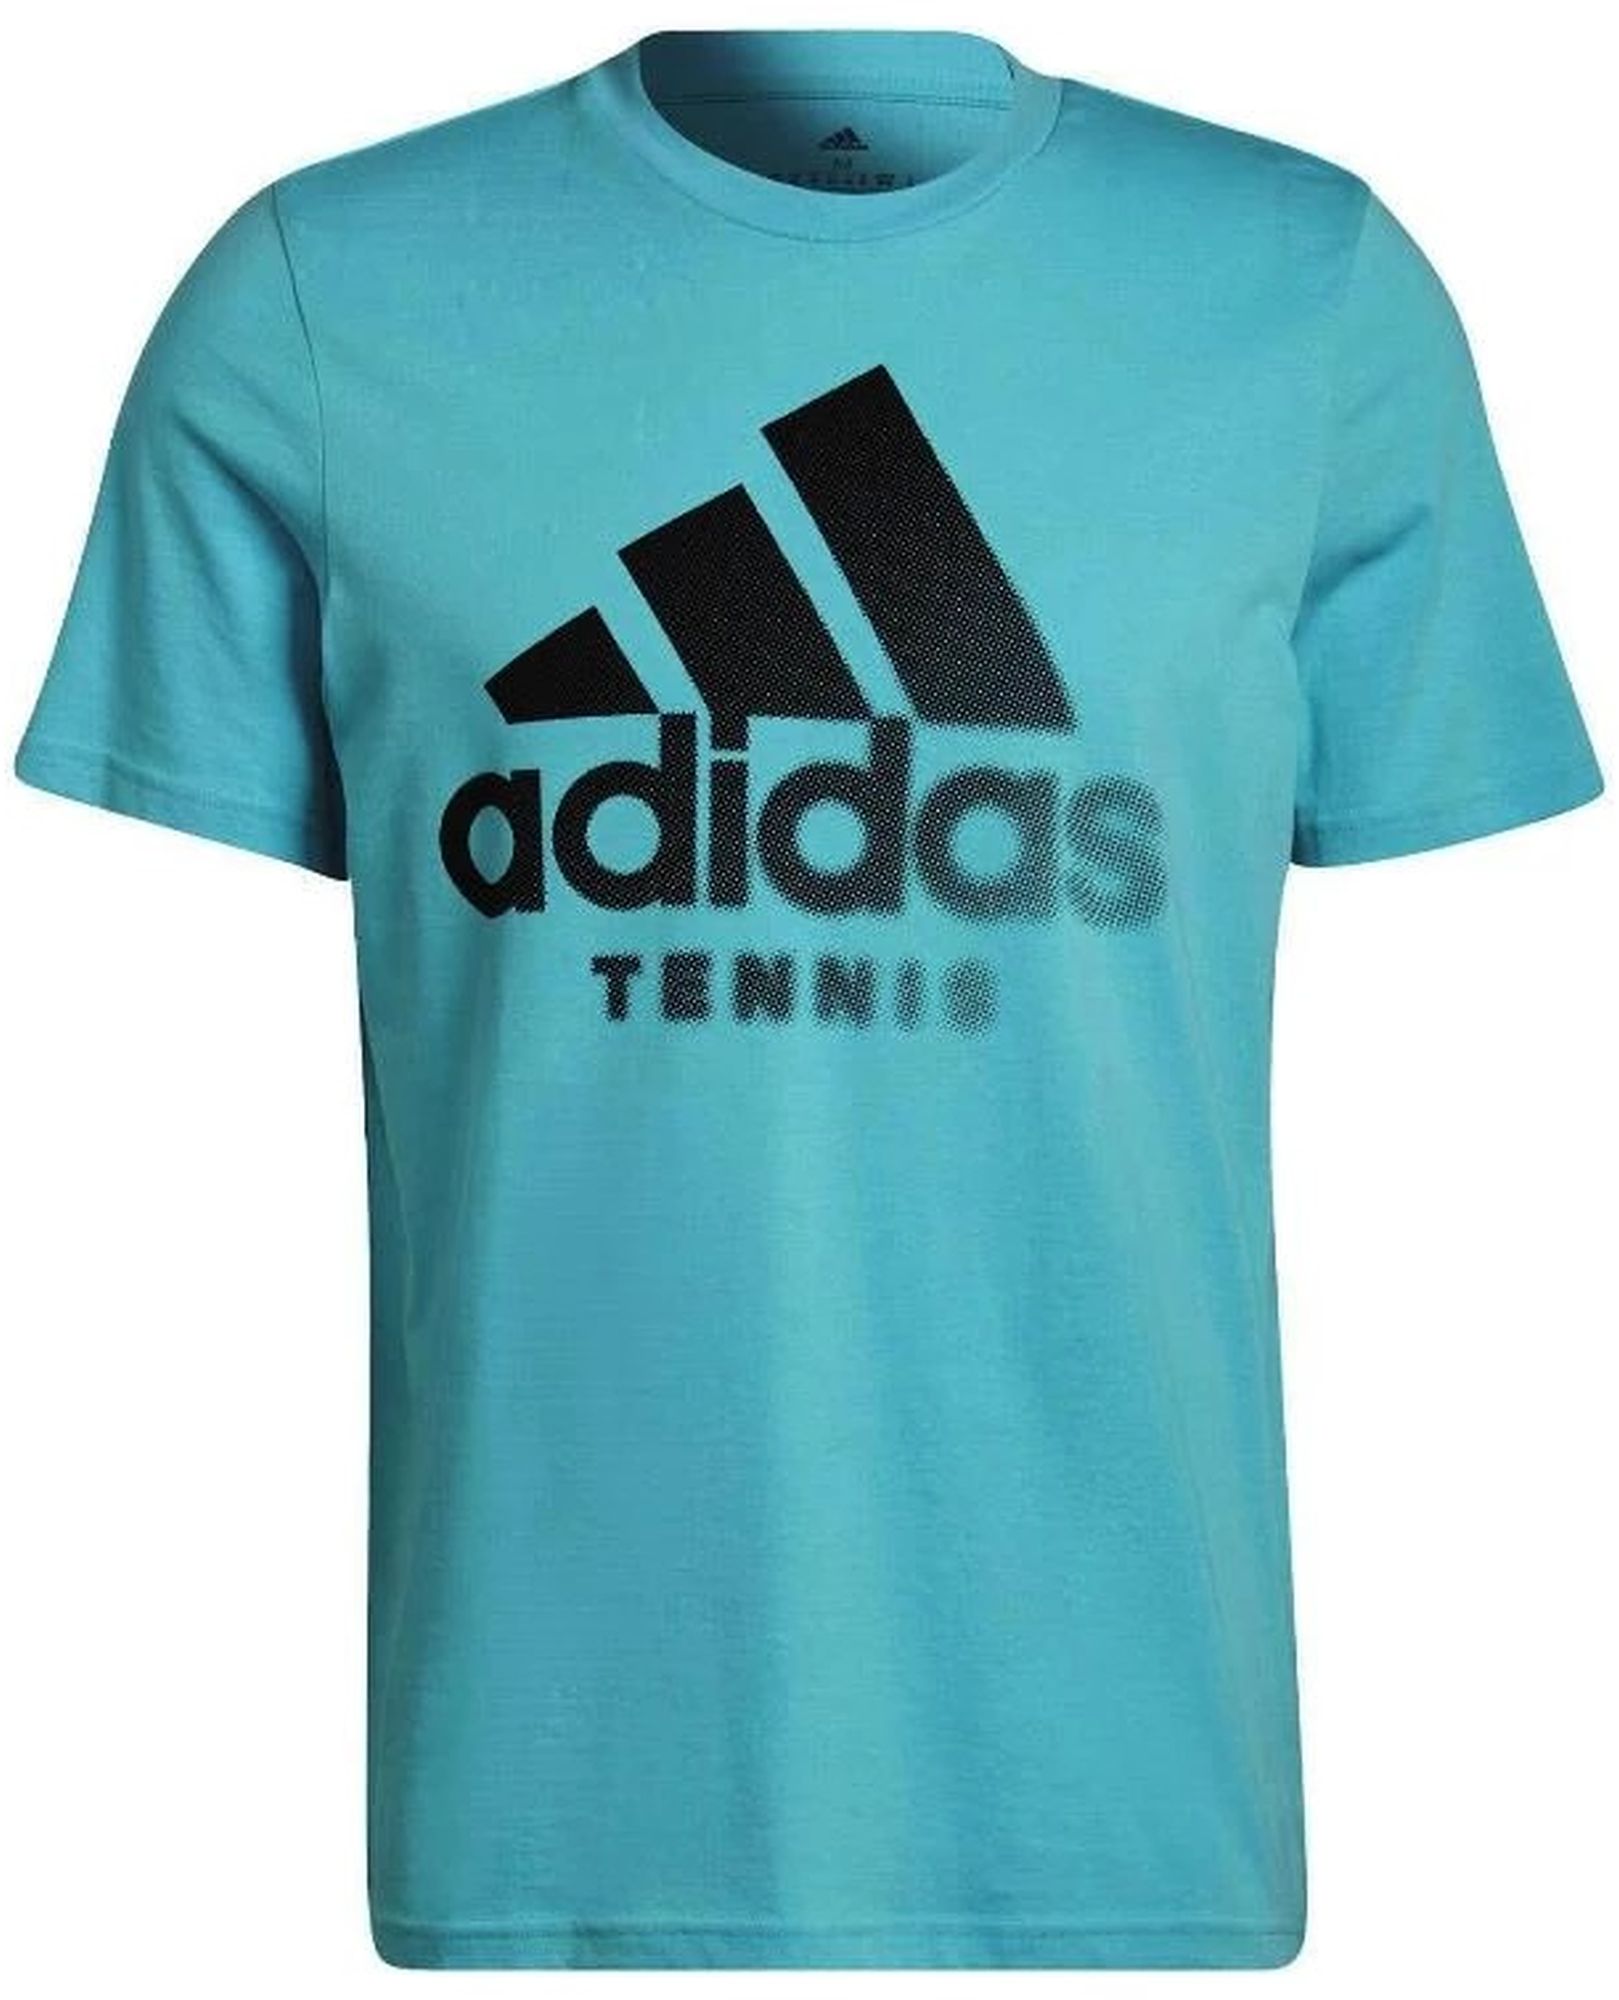 Adidas Men's Tennis Graphic Tee (Aqua)